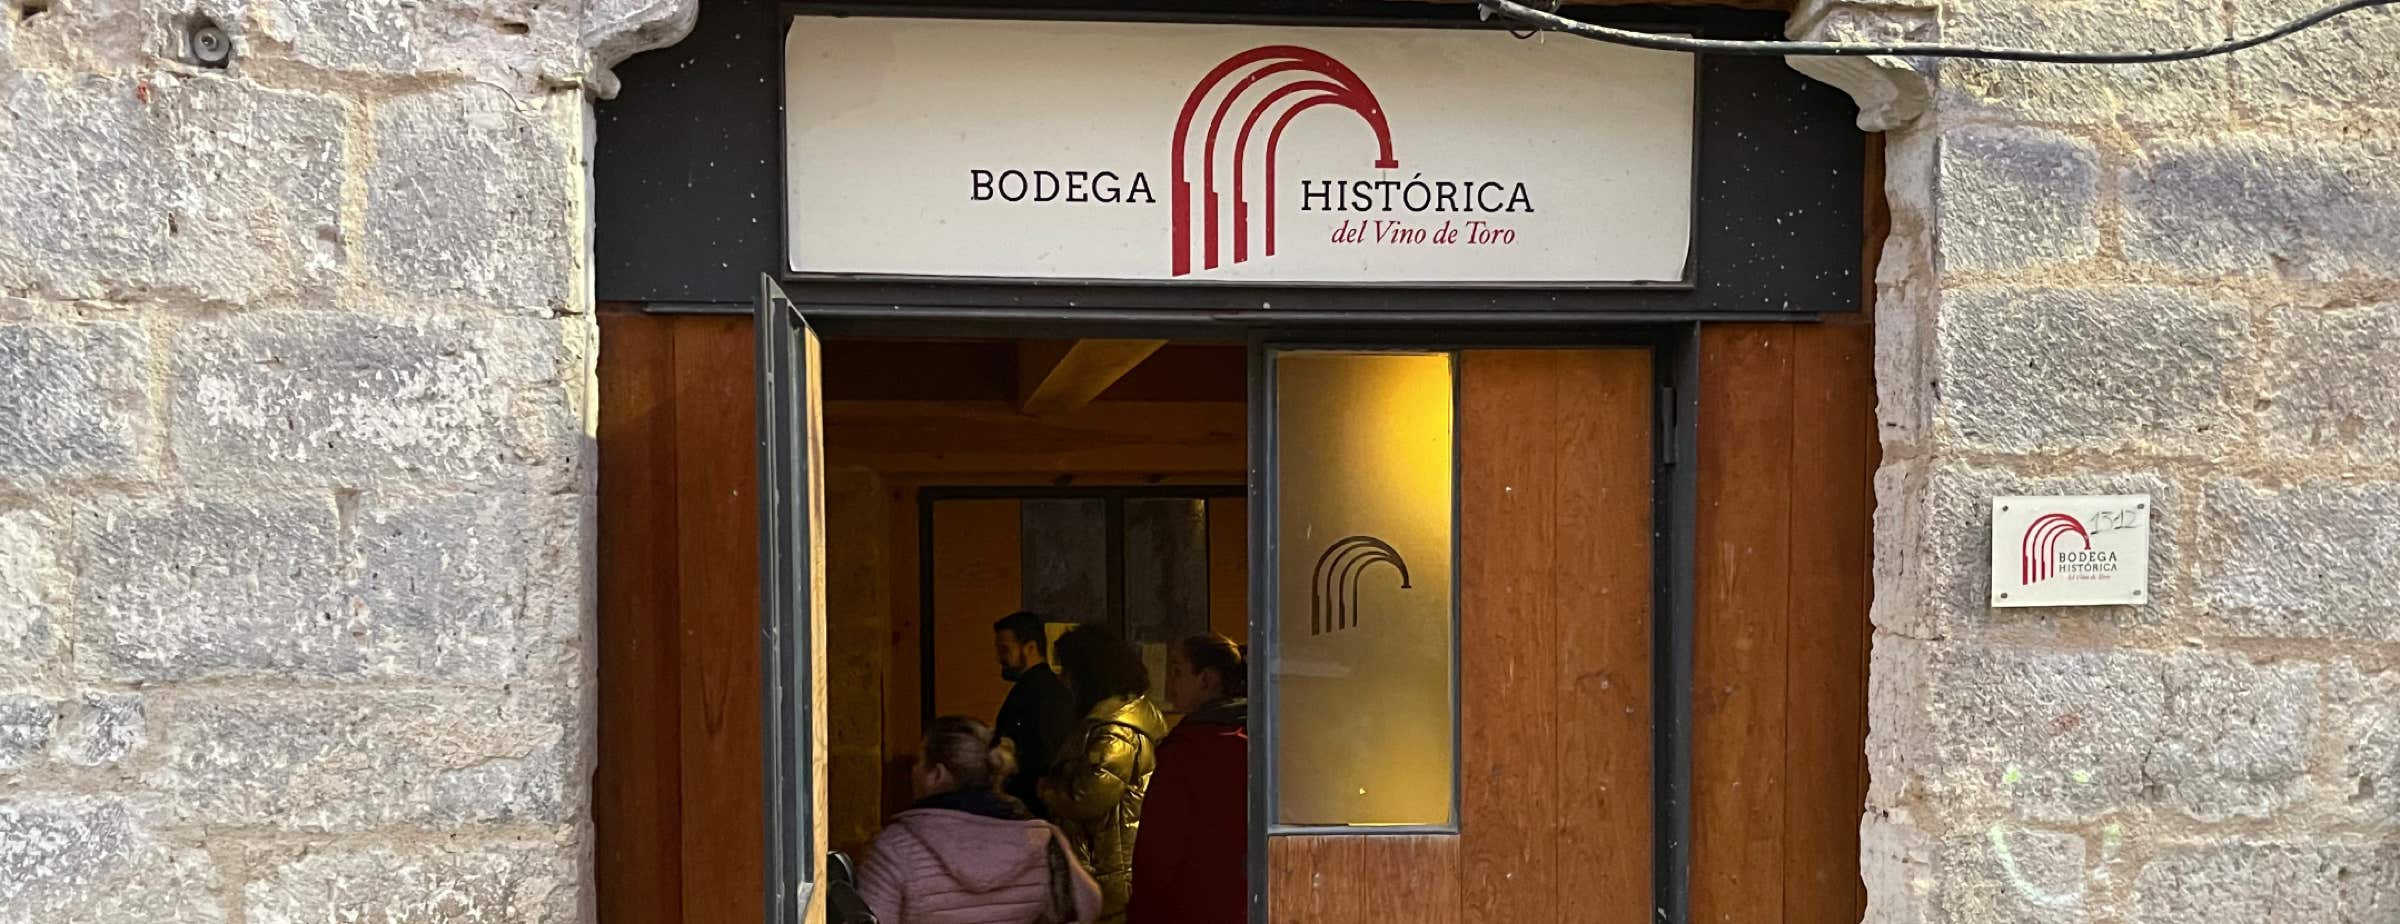 Immagine dell'ingresso della Bodega Histórica. L'ingresso è una porta di legno. Sopra l'entrata c'è un cartello con la scritta "Bodega Histórica del Vino de Toro". La porta è aperta e si vedono persone all'interno. Accanto alla porta sono visibili parti della facciata in pietra grigia.